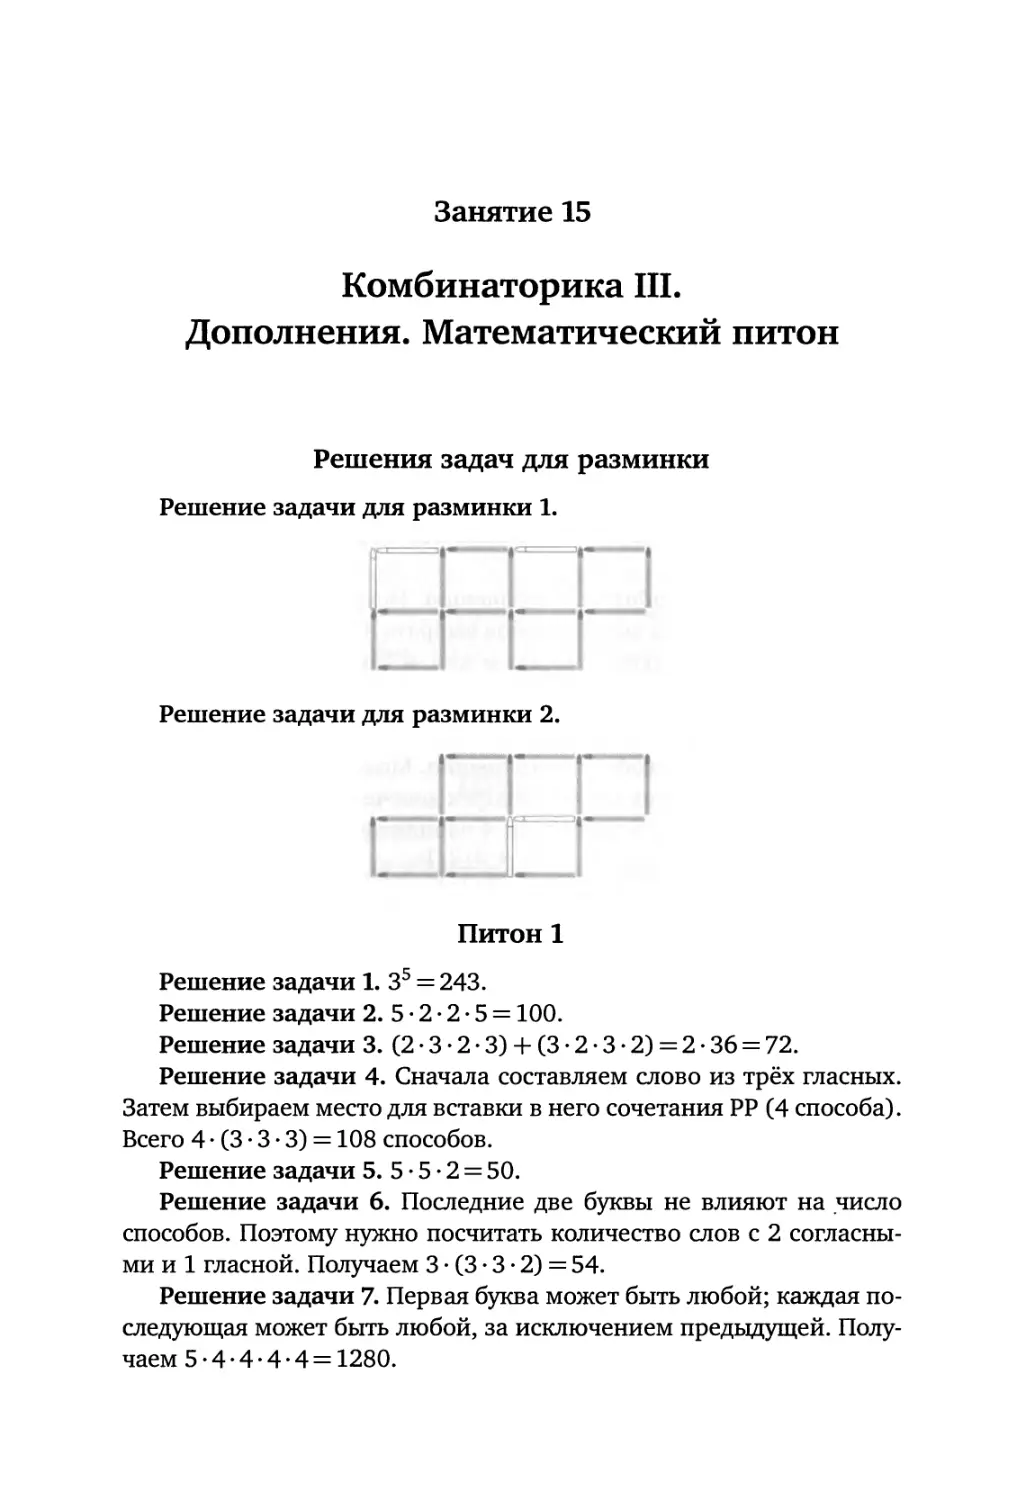 Занятие 15. Комбинаторика III. Дополнения. Математический питон